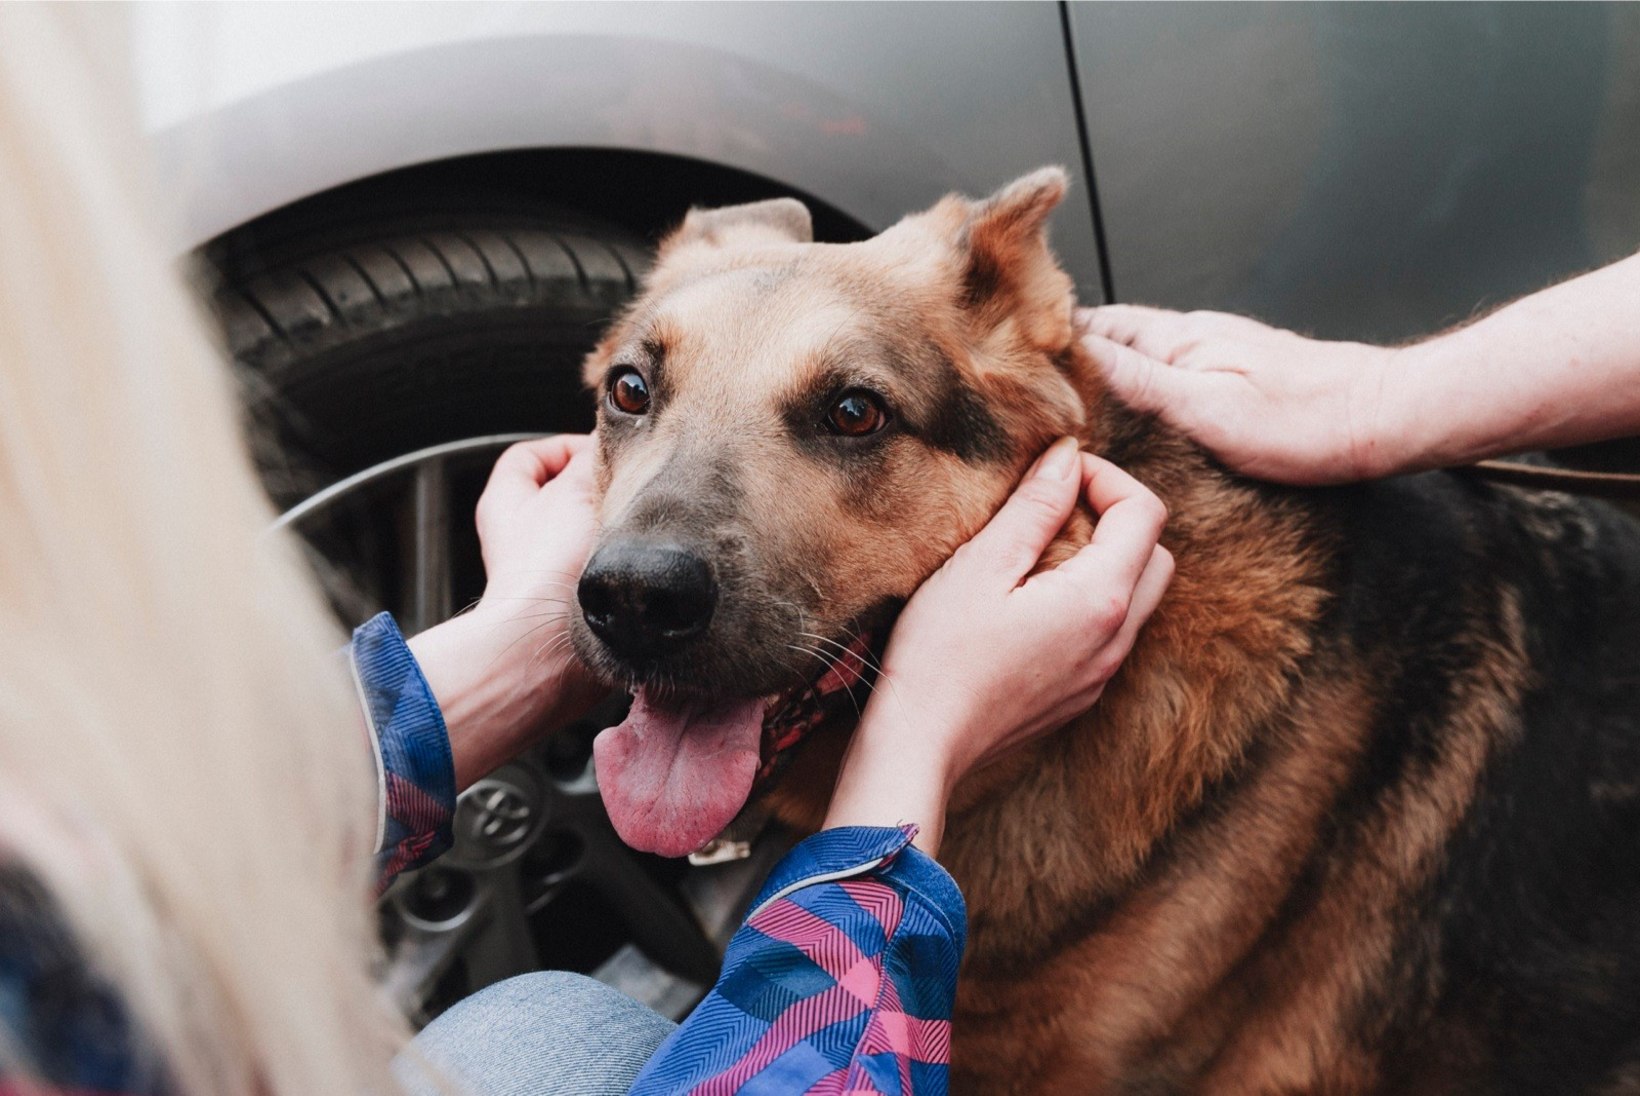 ÕHTULEHE VIDEO JA FOTOD | Lehtses päästeti koer Hallike julma omaniku käest 